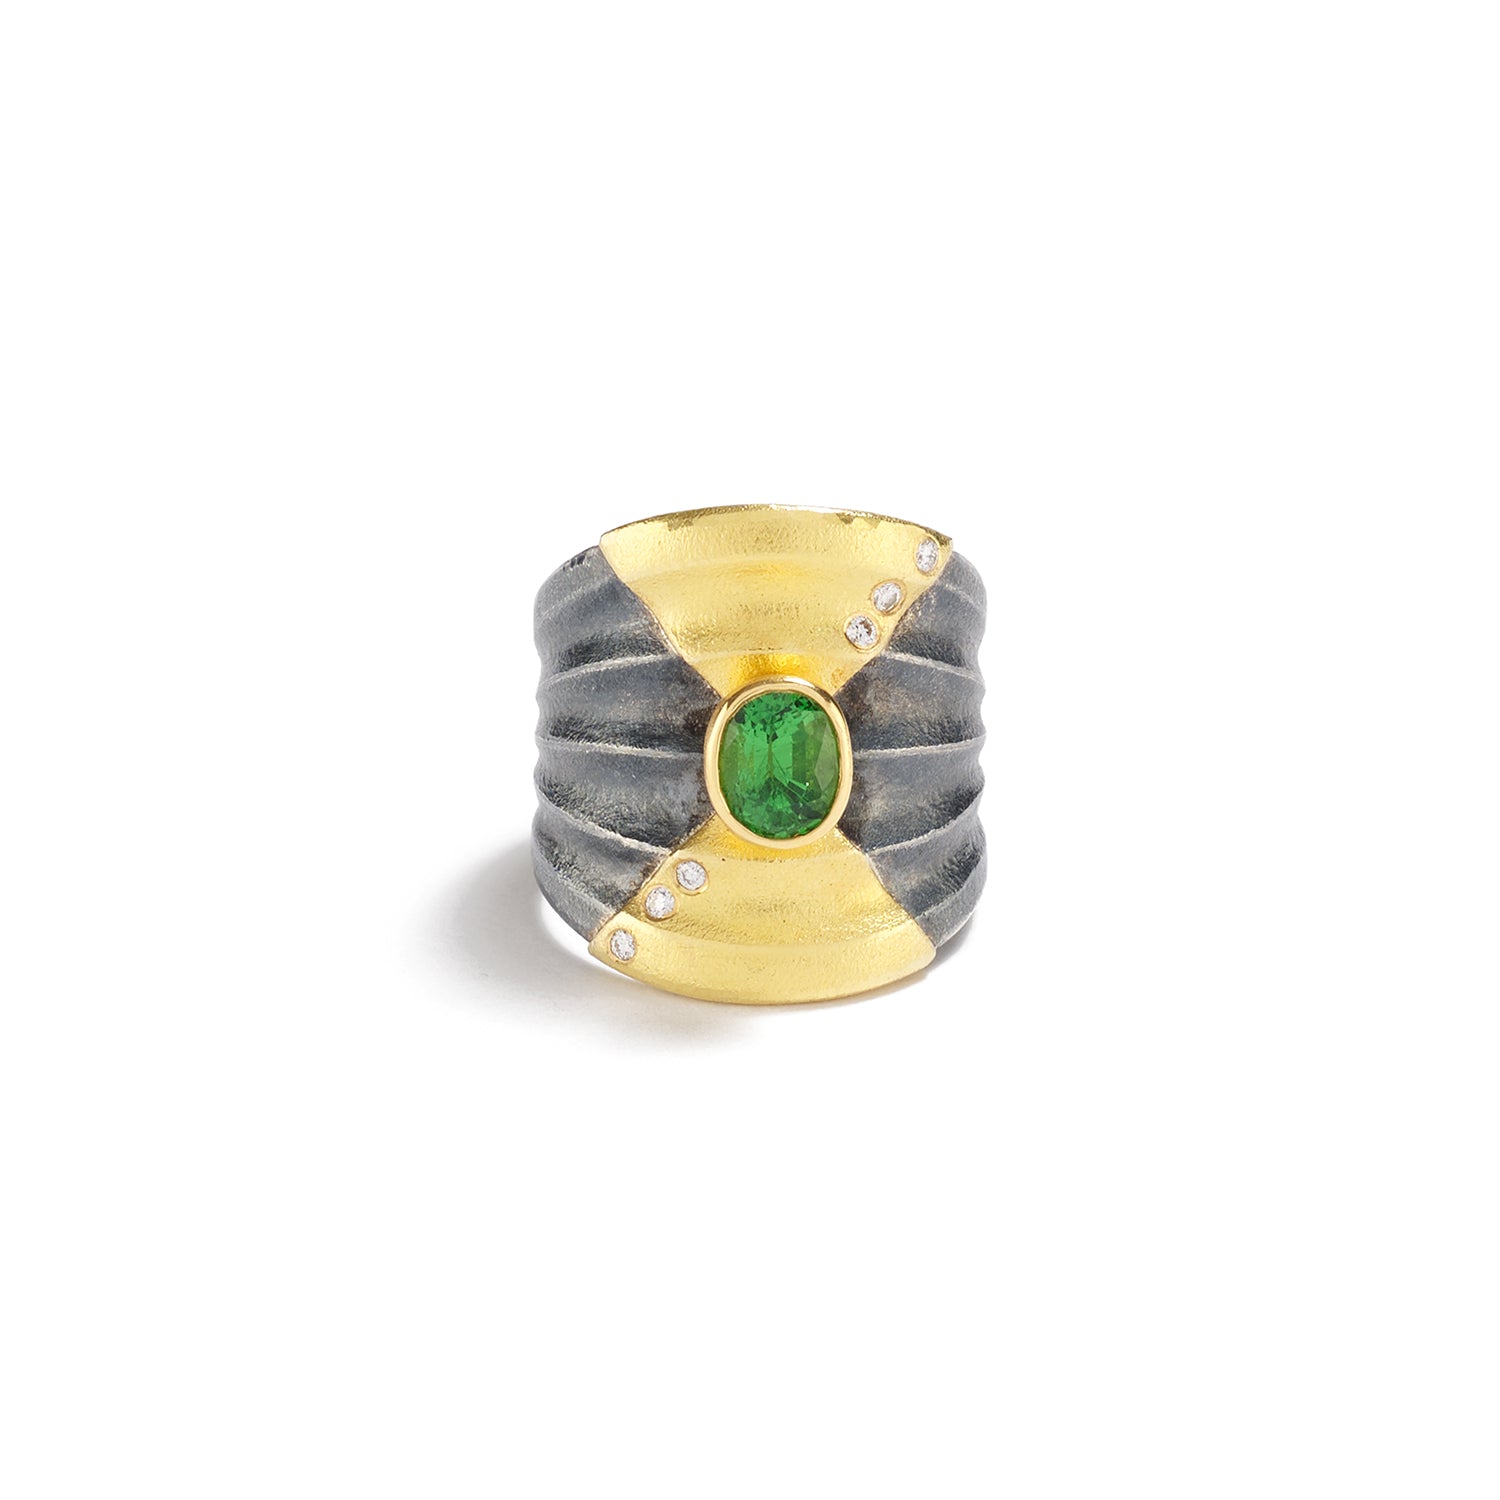 Bezeled Green Tsavorite Ring